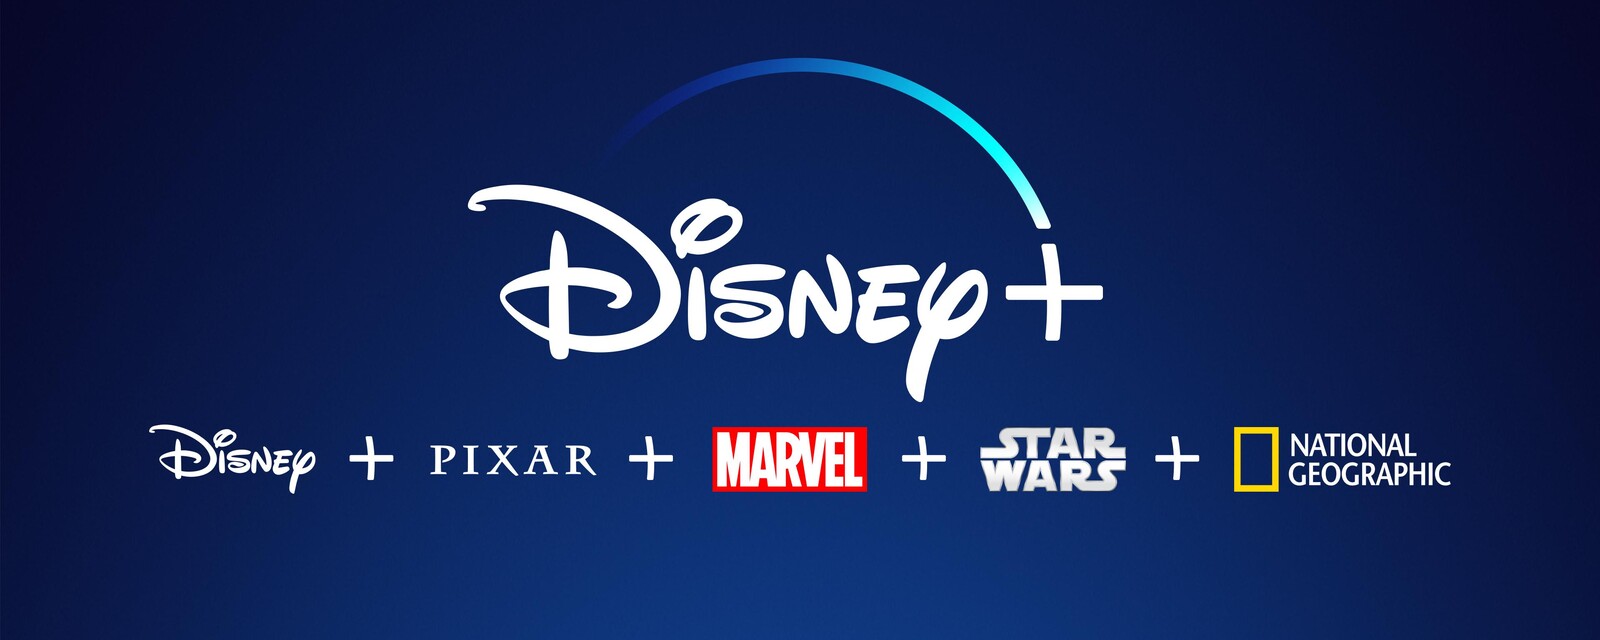 kalmeren Aanpassing bedenken Disney+ Streaming App: Supported Devices, Bundles & Content | Disney+